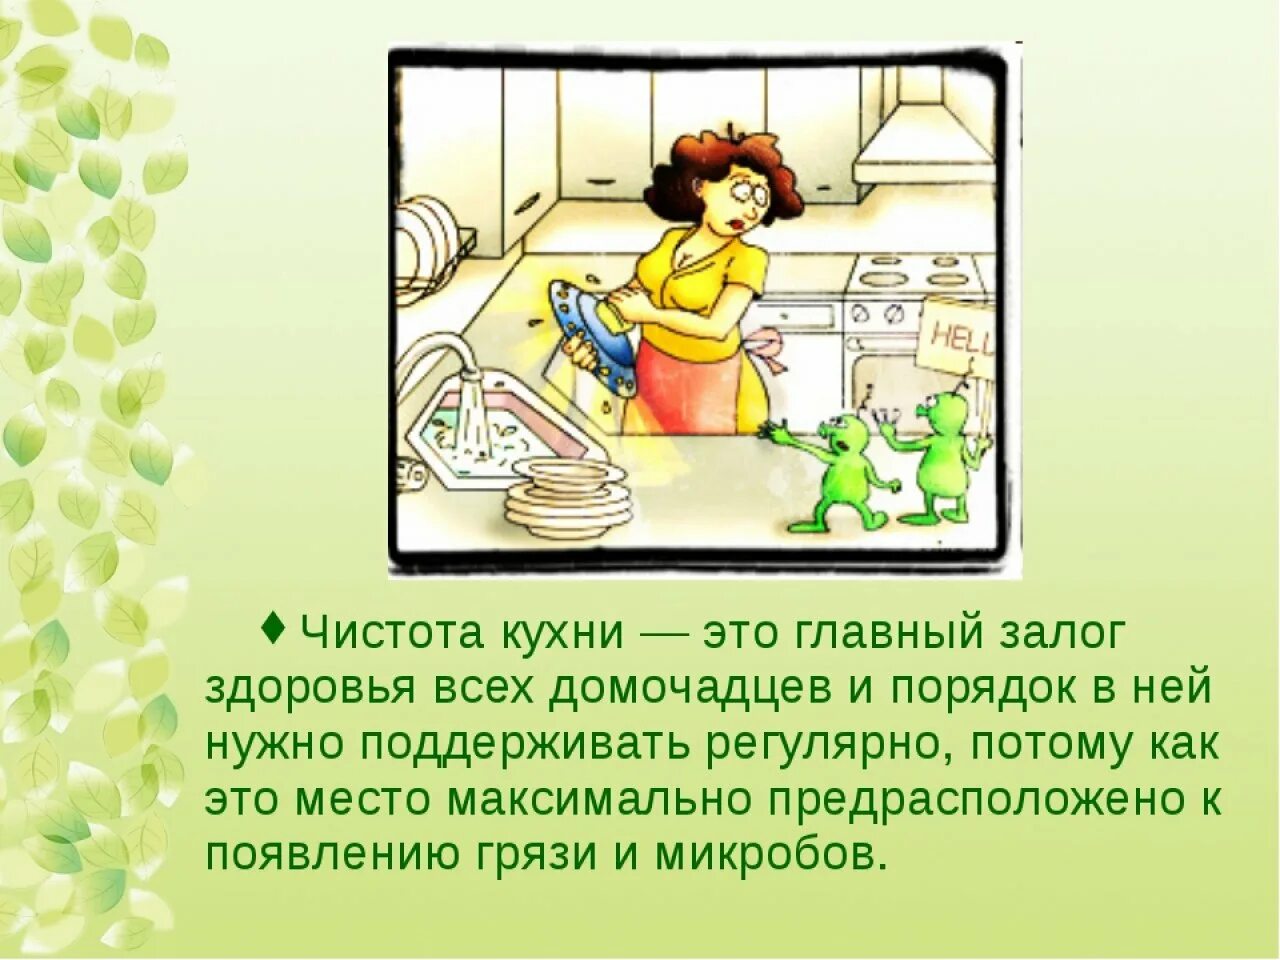 Соблюдение чистоты на кухне. Поддерживать чистоту и порядок. Соблюдение чистоты и порядка на кухне. Порядок и чистота на кухне залог здоровья.